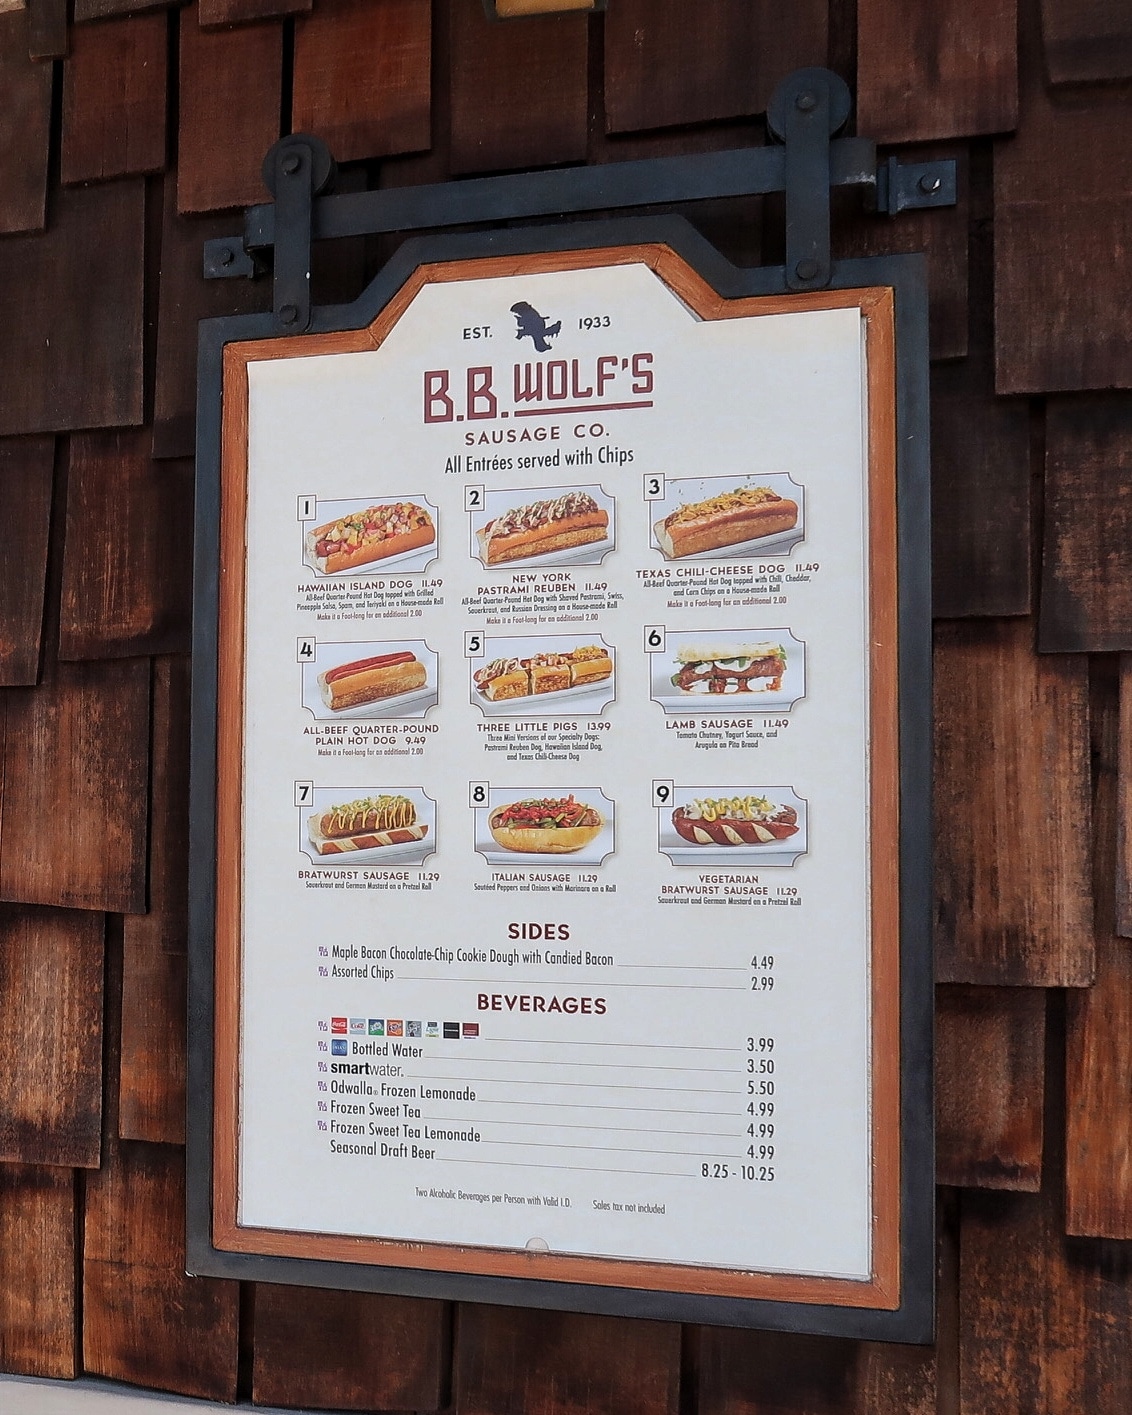 Vegan Bratwurst Sausage at B.B. Wolf’s Sausage Co. in Disney Springs at Walt Disney World